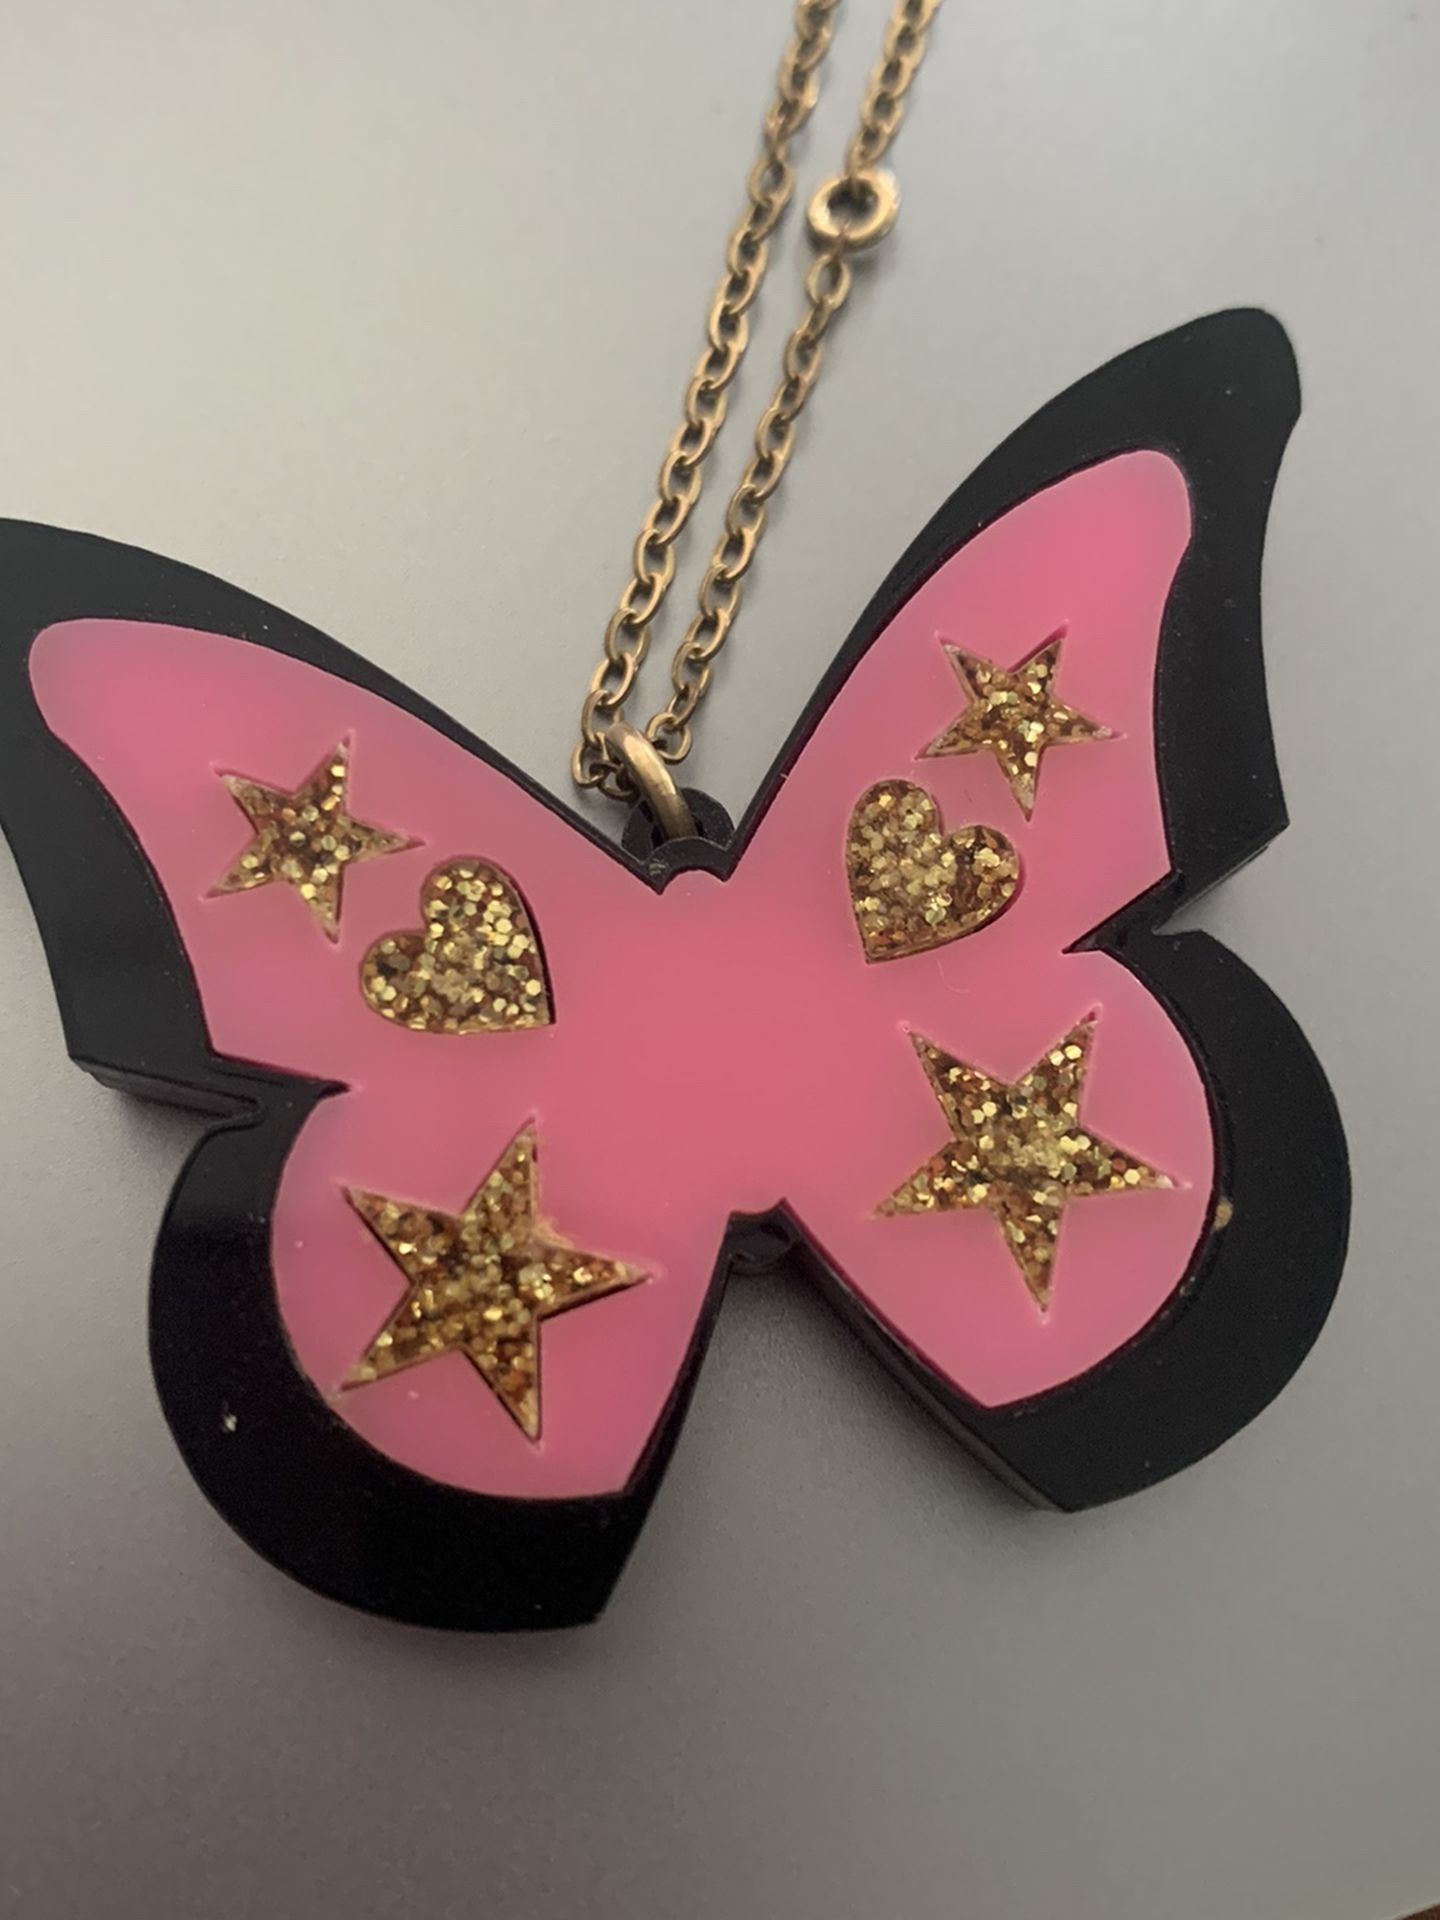 Steven Shein Butterfly Necklace